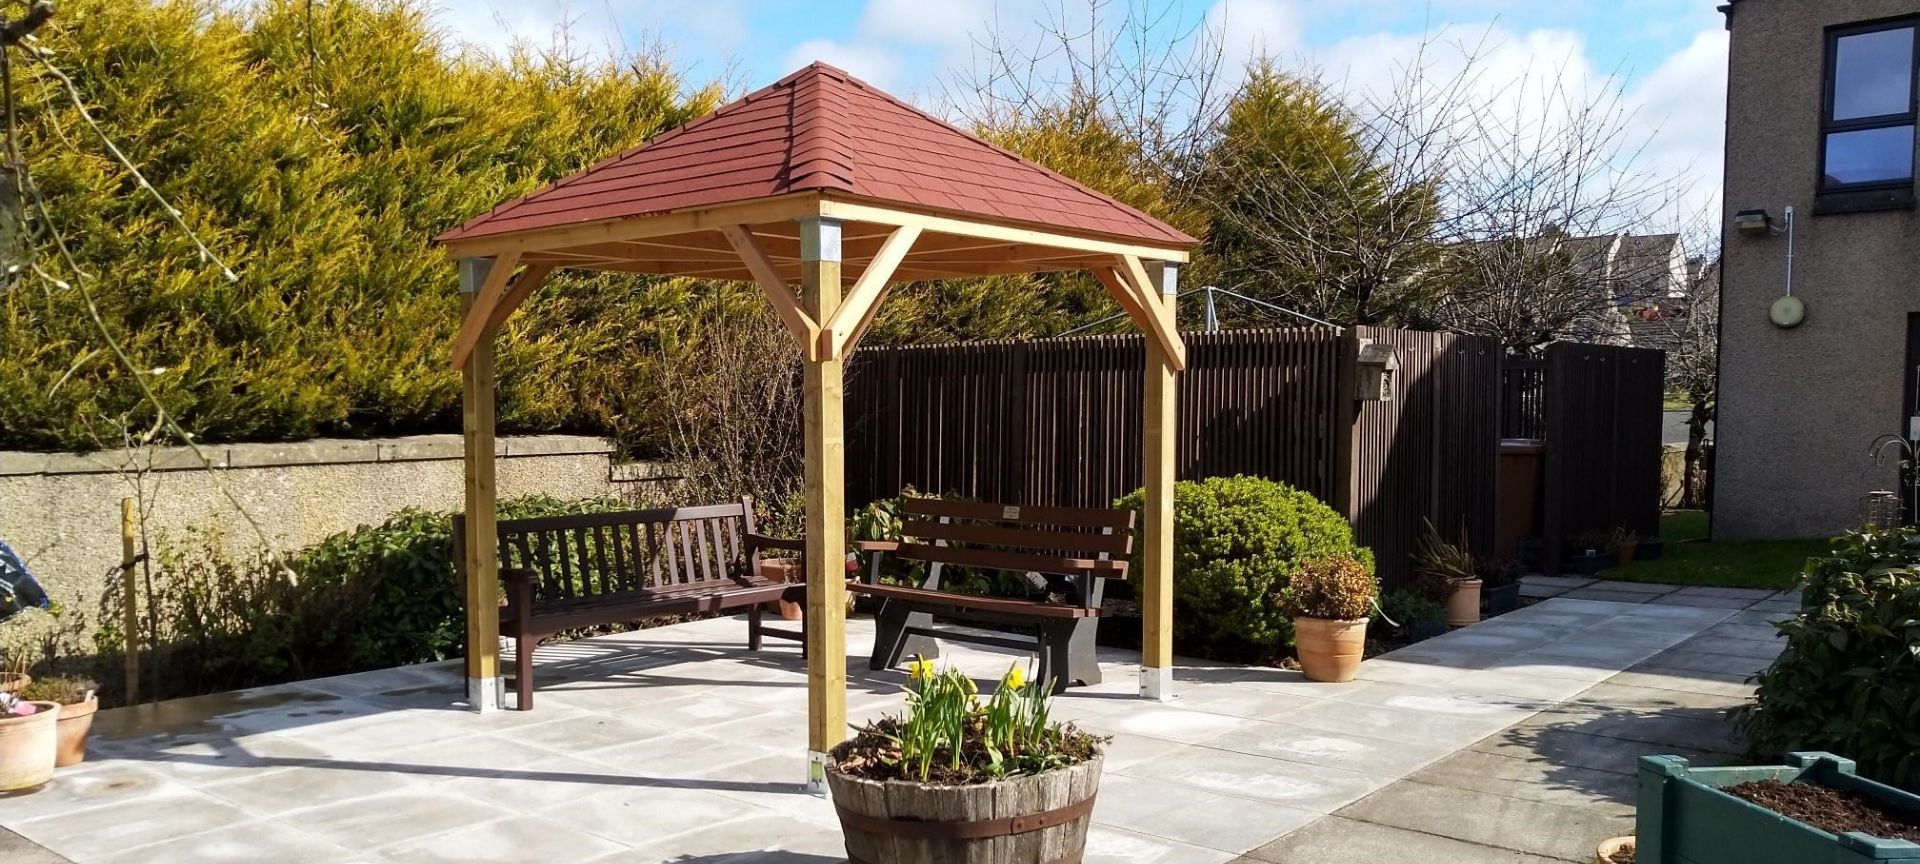 Garden Shelter for Elderly Residents in Dufftown